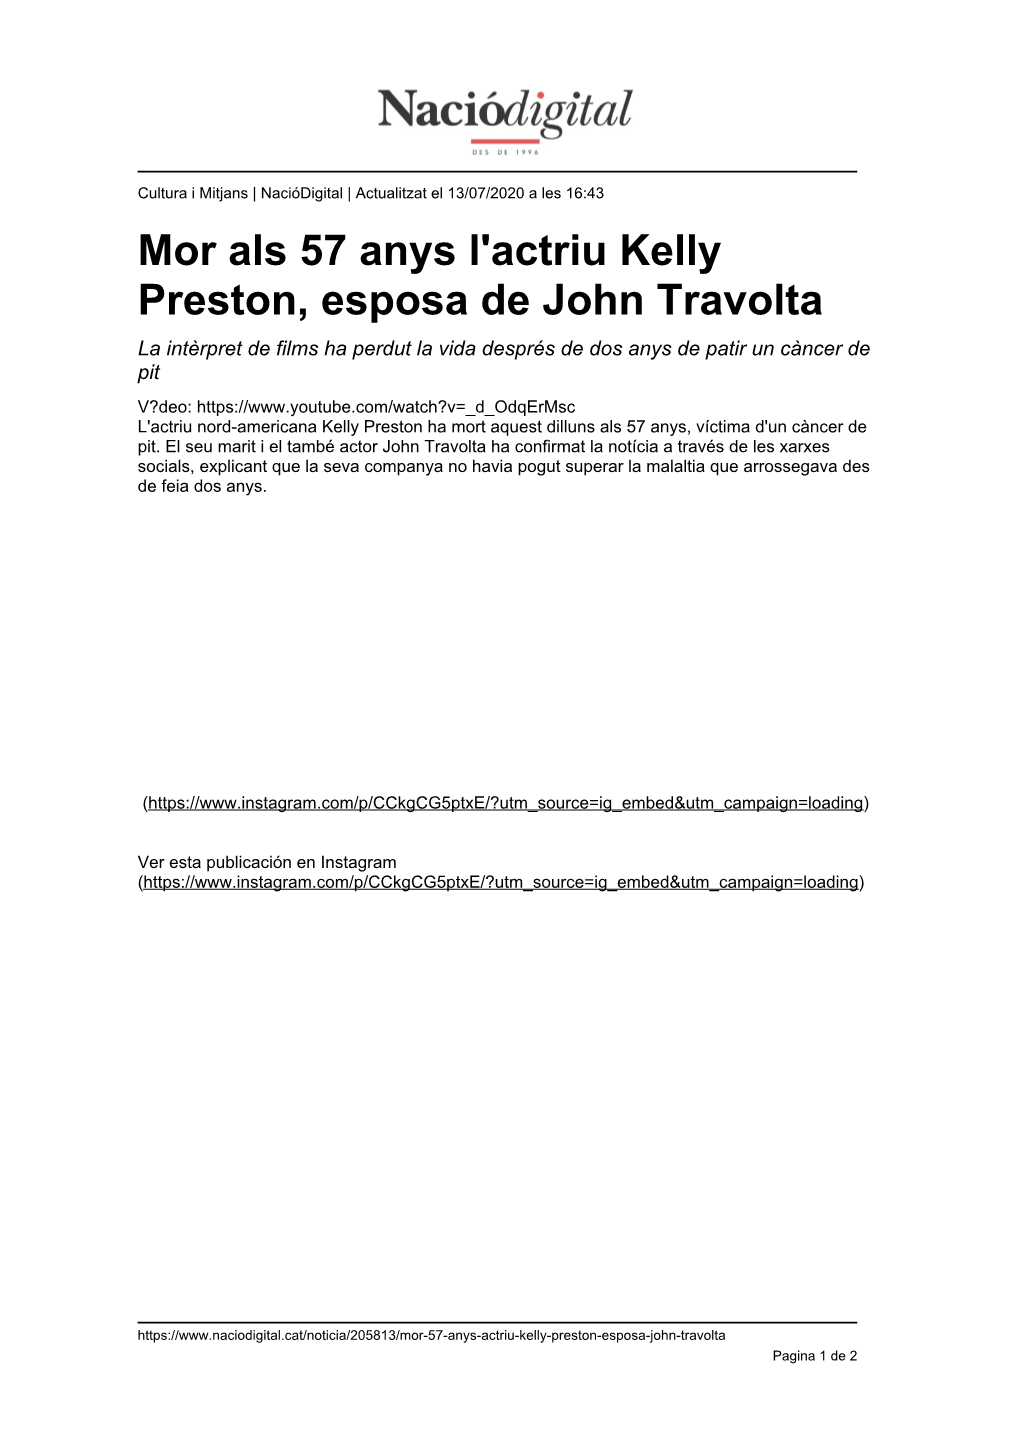 Mor Als 57 Anys L'actriu Kelly Preston, Esposa De John Travolta